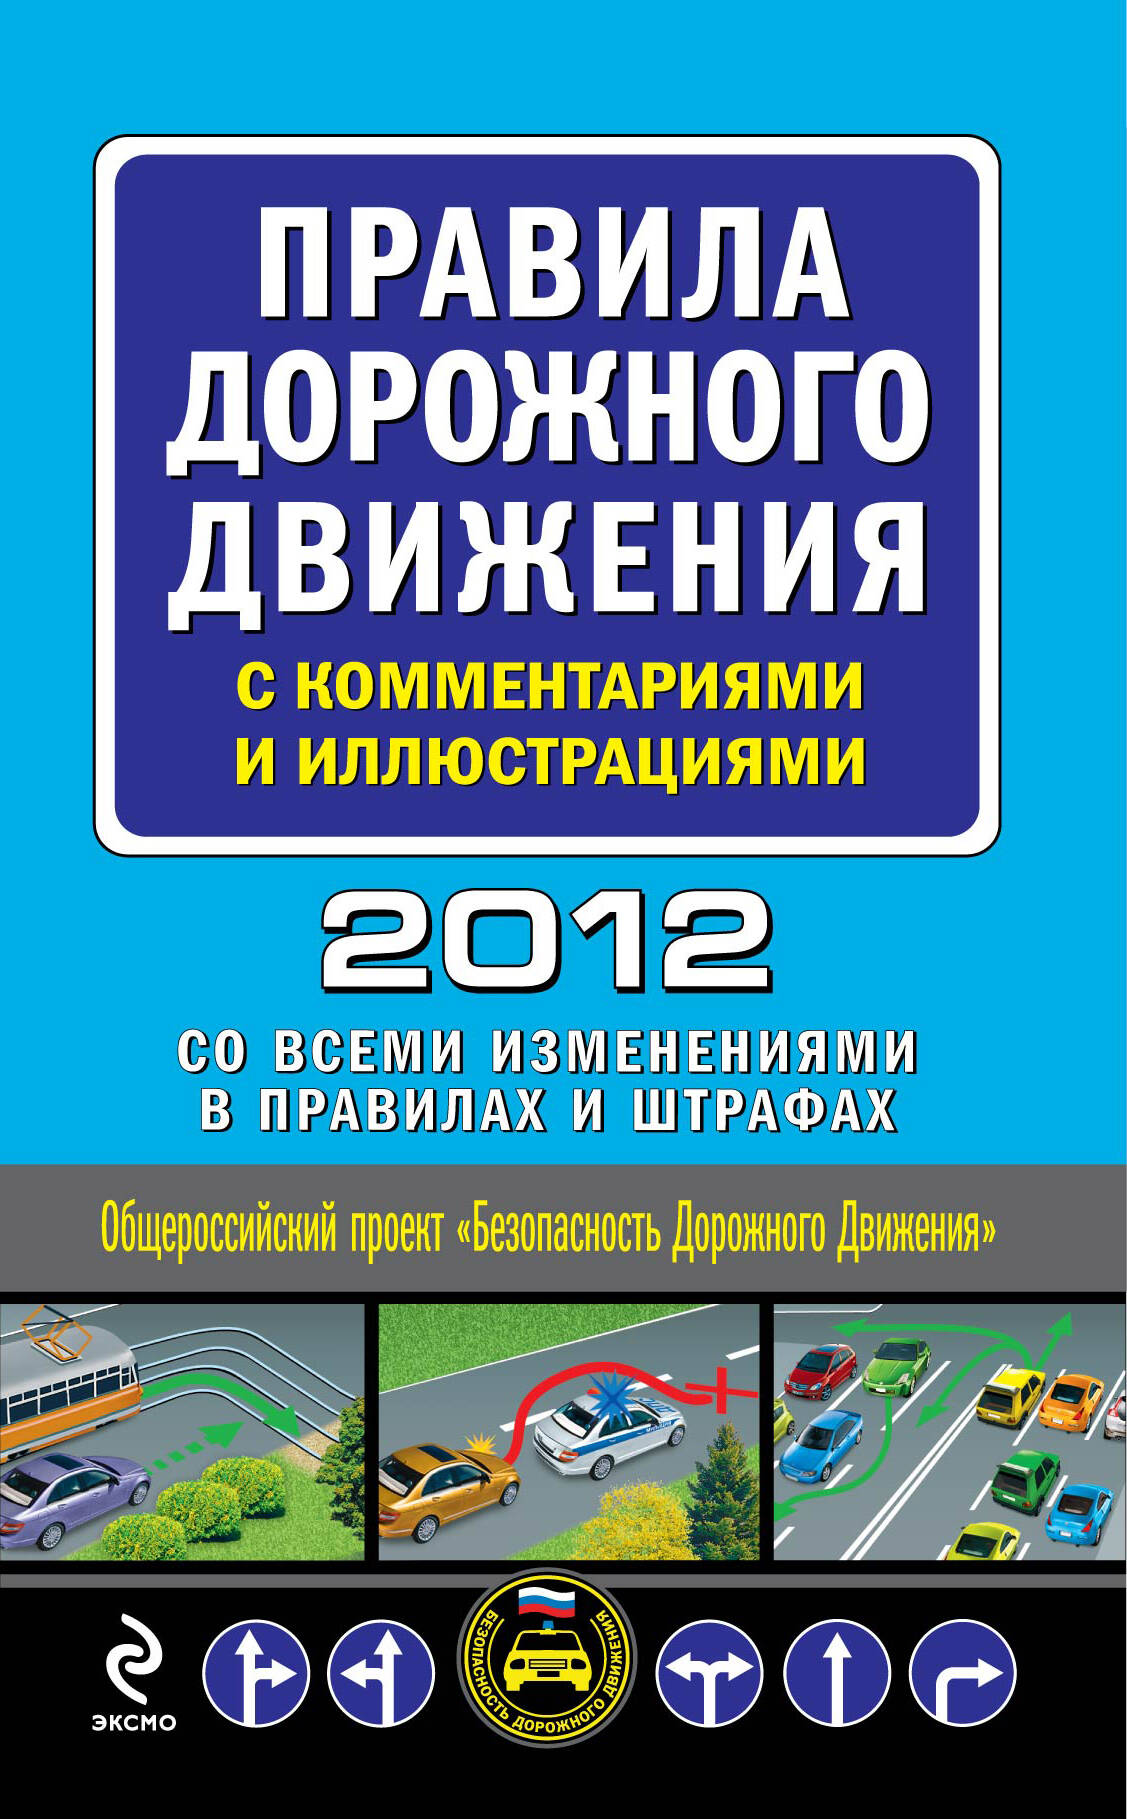 Правила дорожного движения с комментариями и иллюстрациями 2012 (со всеми изменениями в правилах и штрафах)